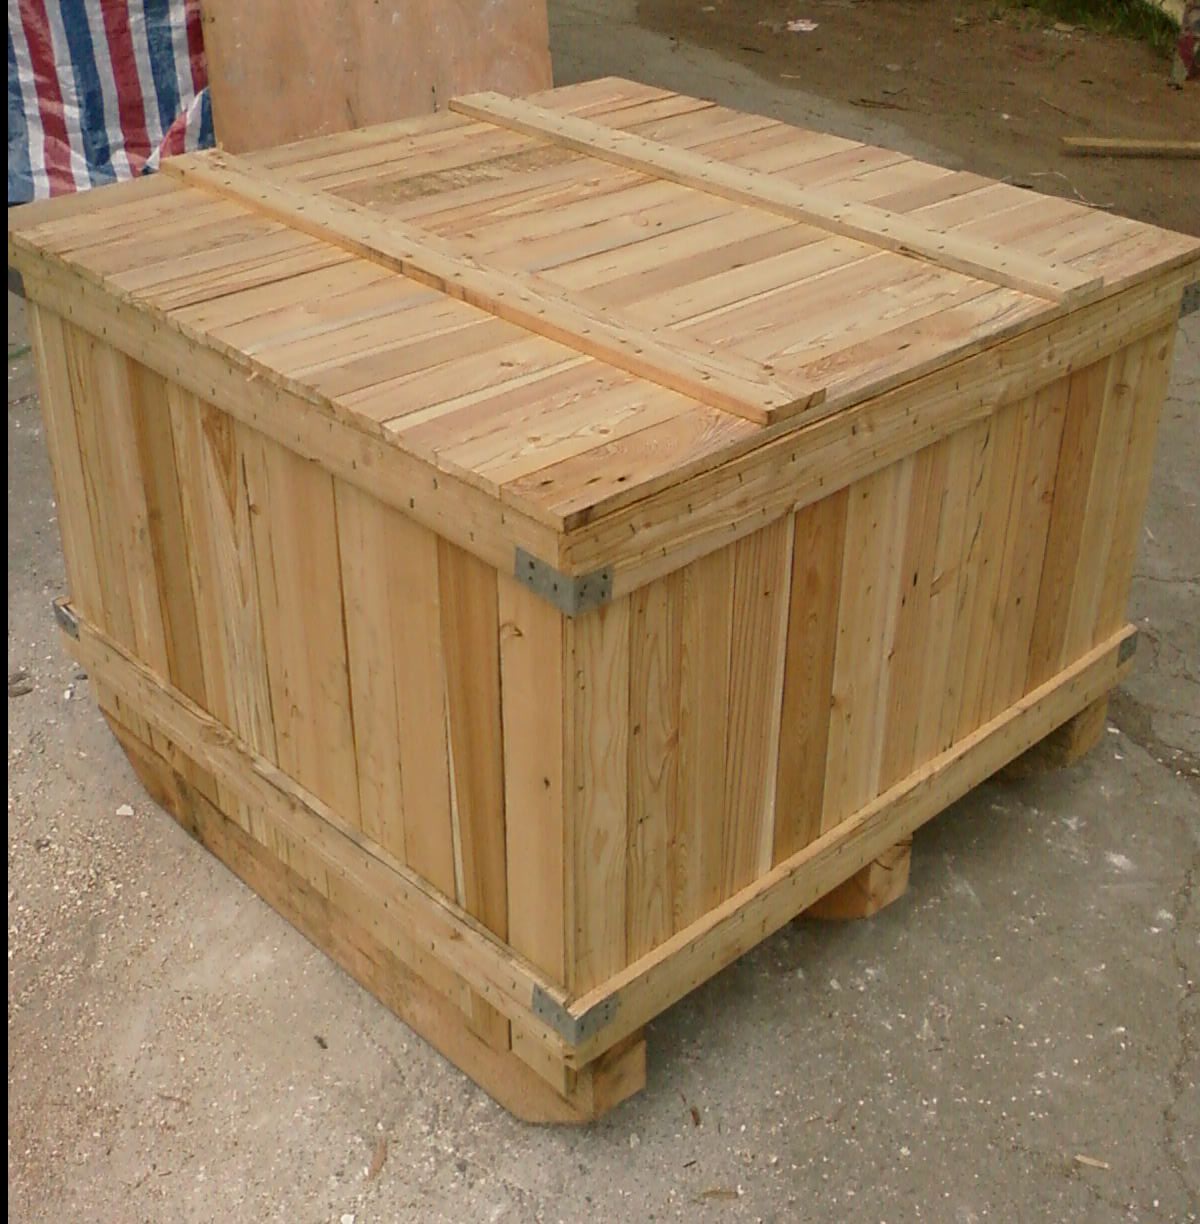 木包装箱的回收复用是木包装箱回收的资源化利用的首选途径